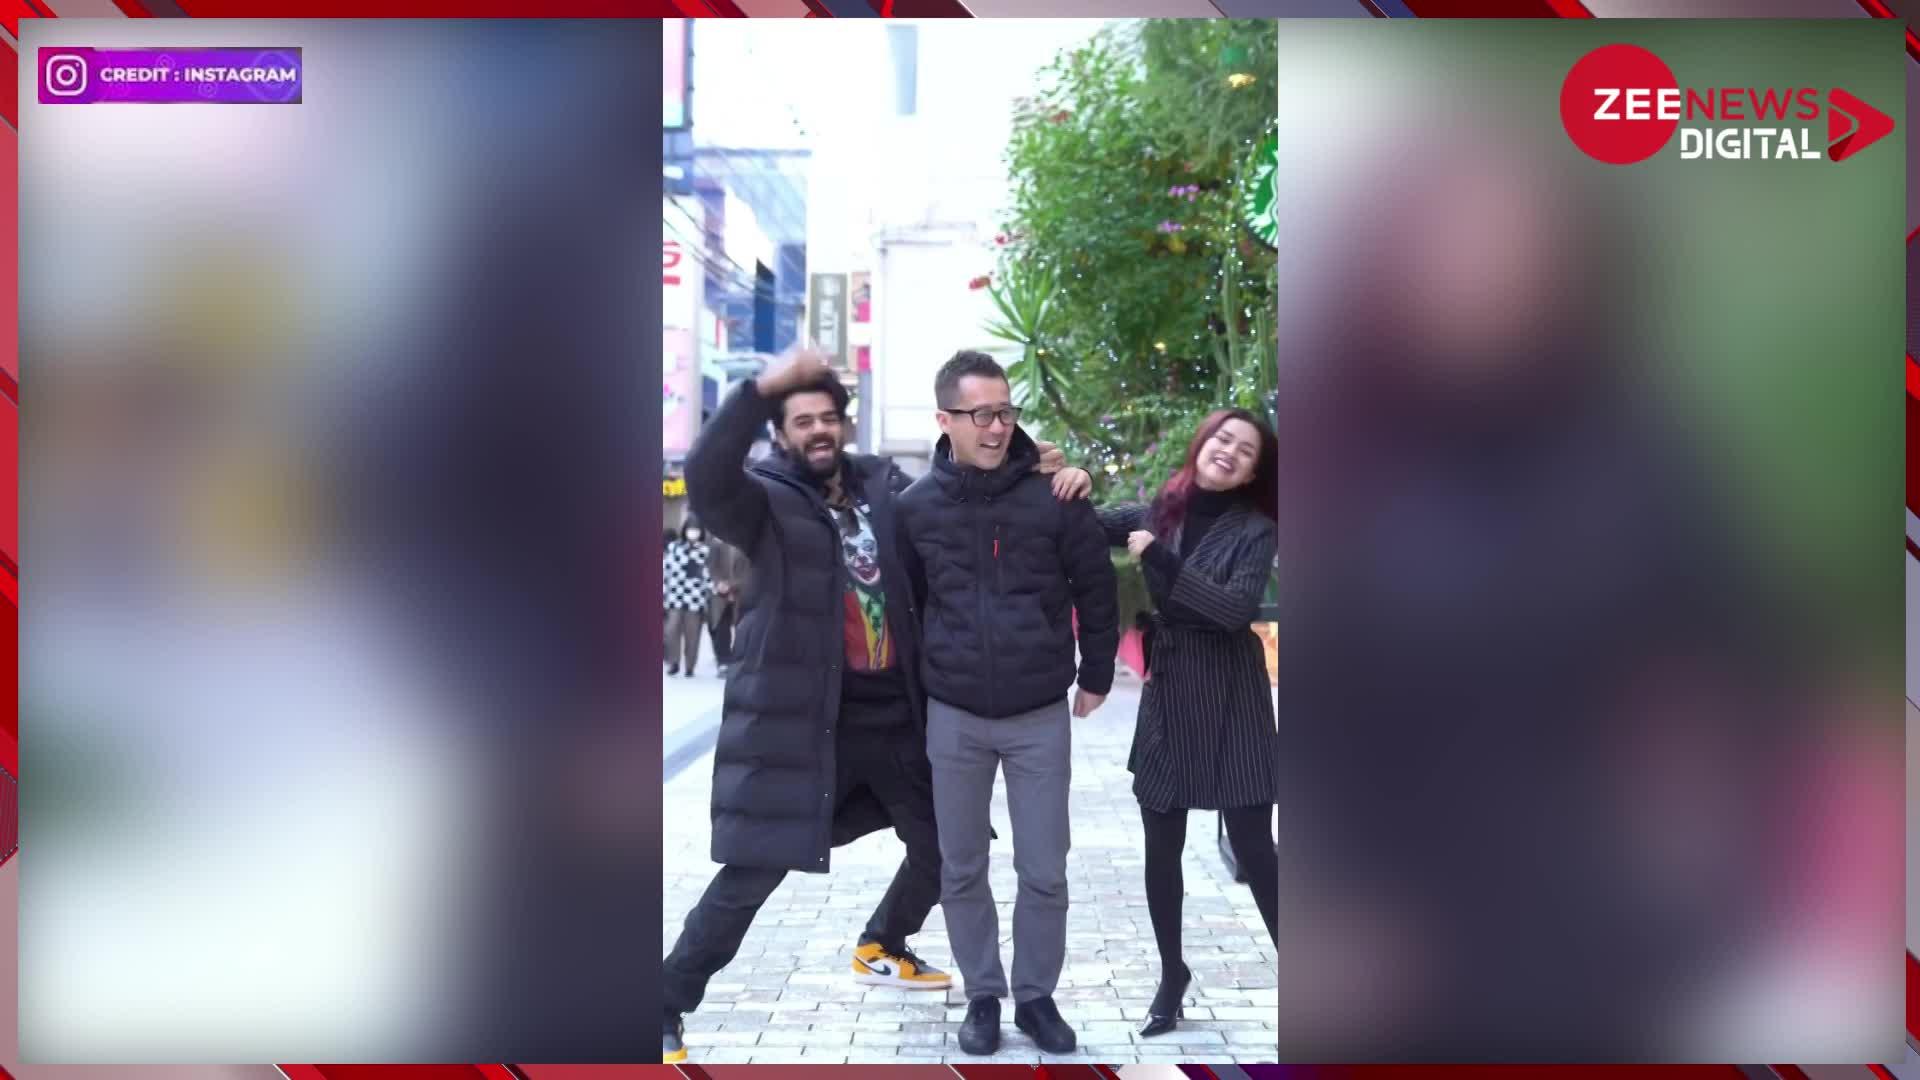 Manish Paul And Avneet kaur Dance: जापान की सड़कों पर मनीष पॉल और अवनीत कौर का धांसू डांस, गोविंदा के गाने पर लगाए ठुमके